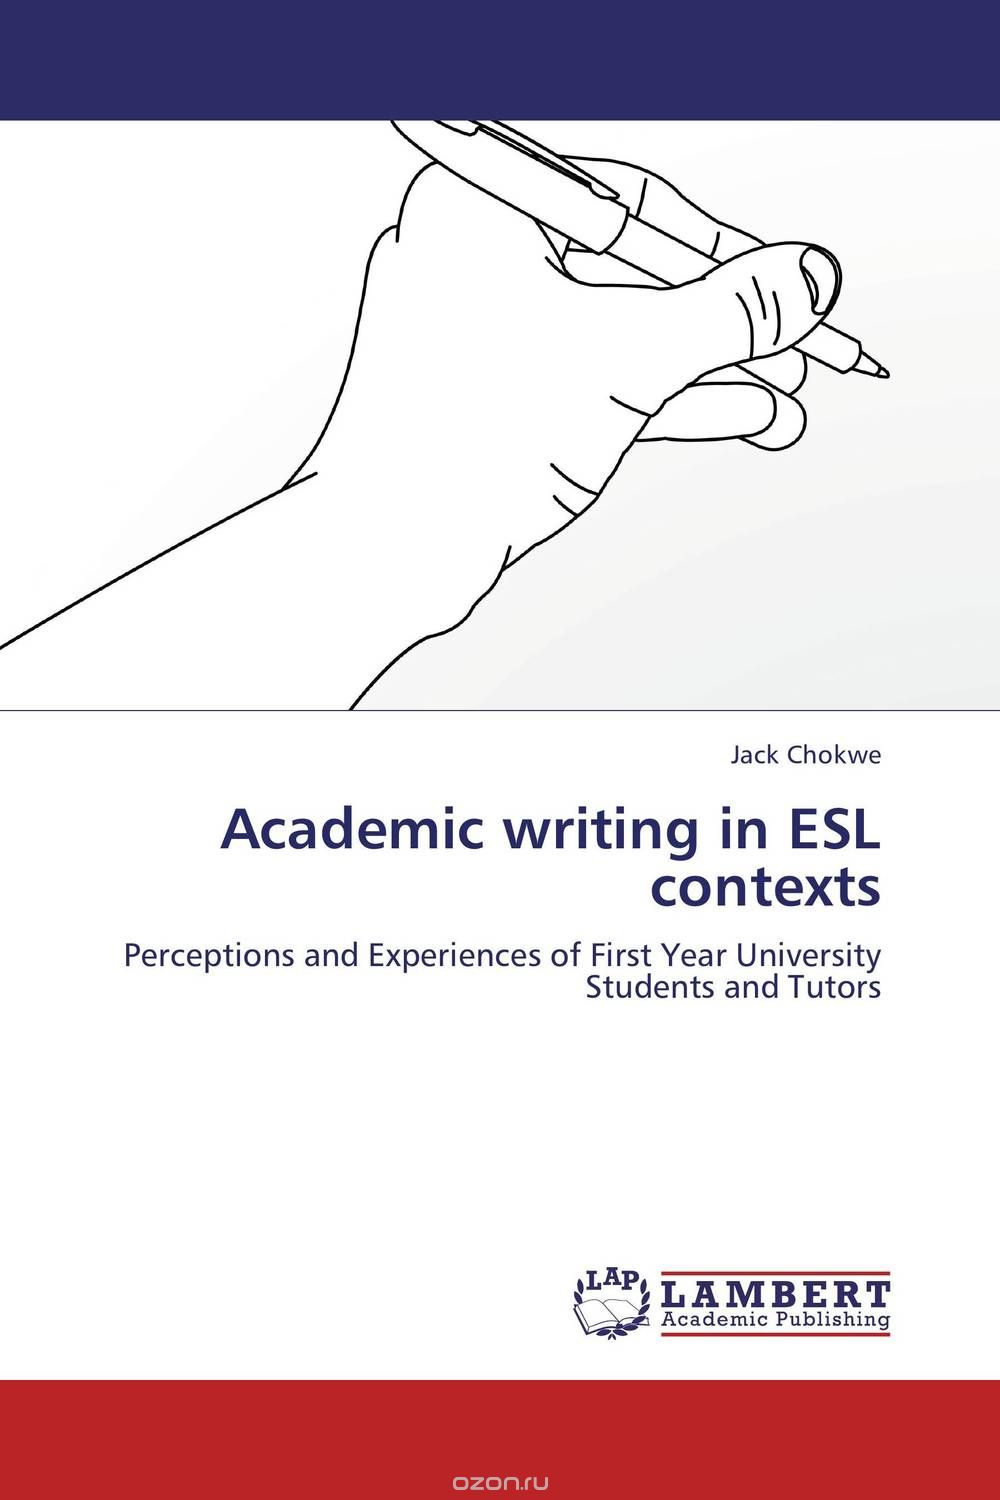 Скачать книгу "Academic writing in ESL contexts"